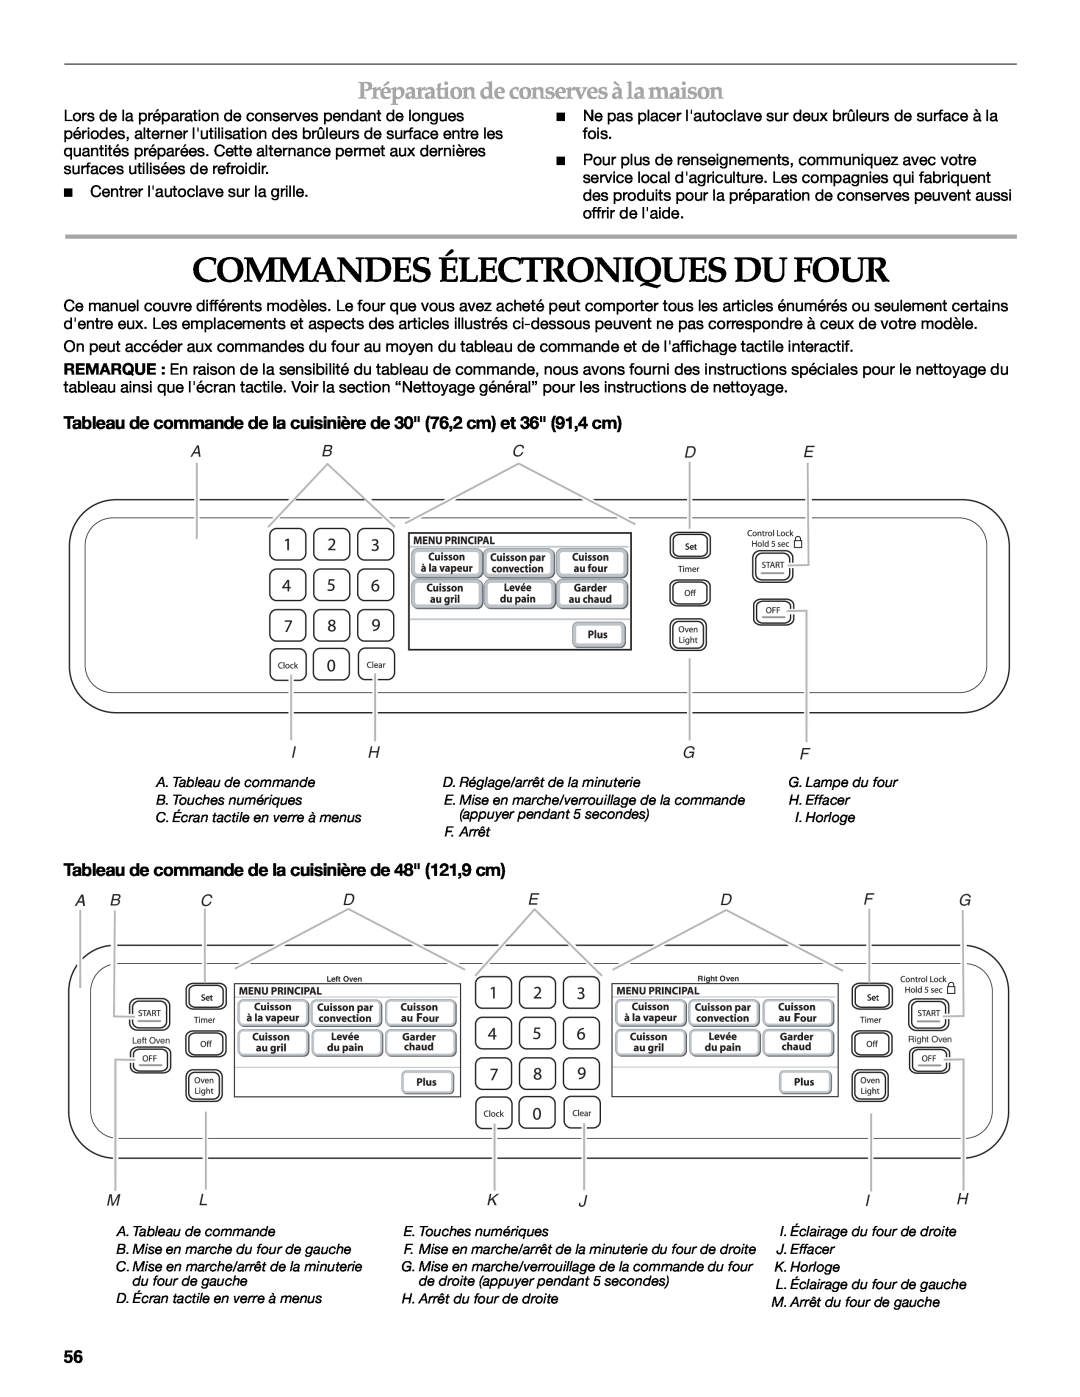 KitchenAid KDRU763.KDRU manual Commandes Électroniques Du Four, Préparation deconserves àlamaison, Abcde, Mlkjih 